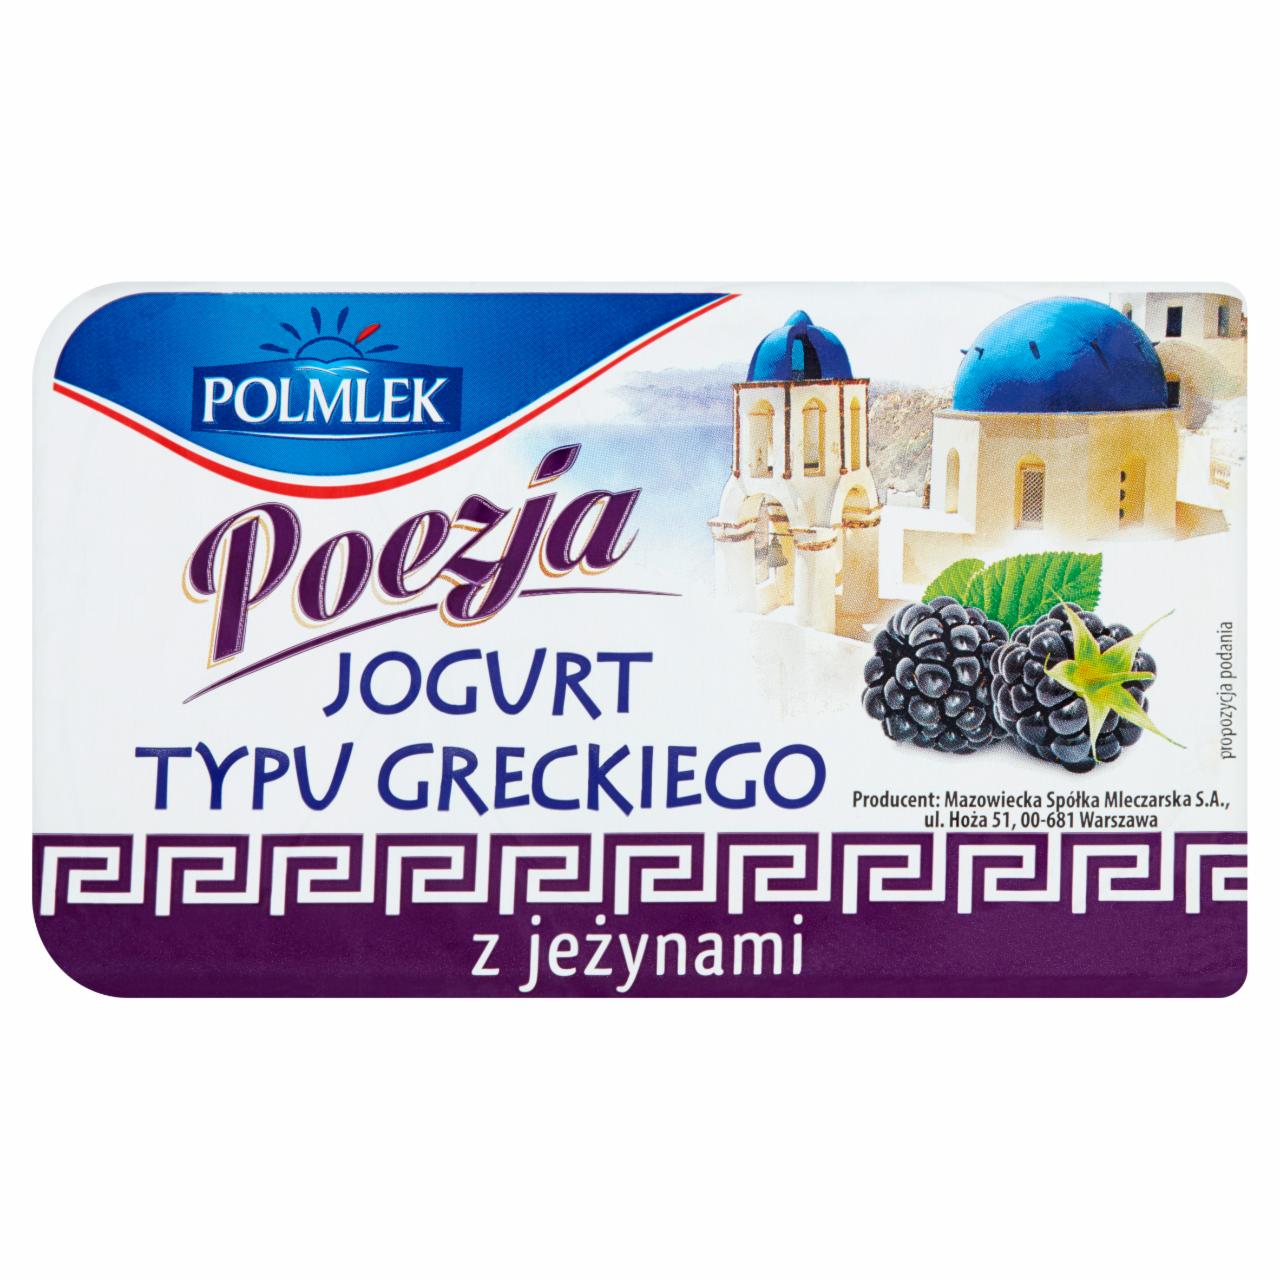 Zdjęcia - Polmlek Poezja Jogurt typu greckiego z jeżynami 150 g